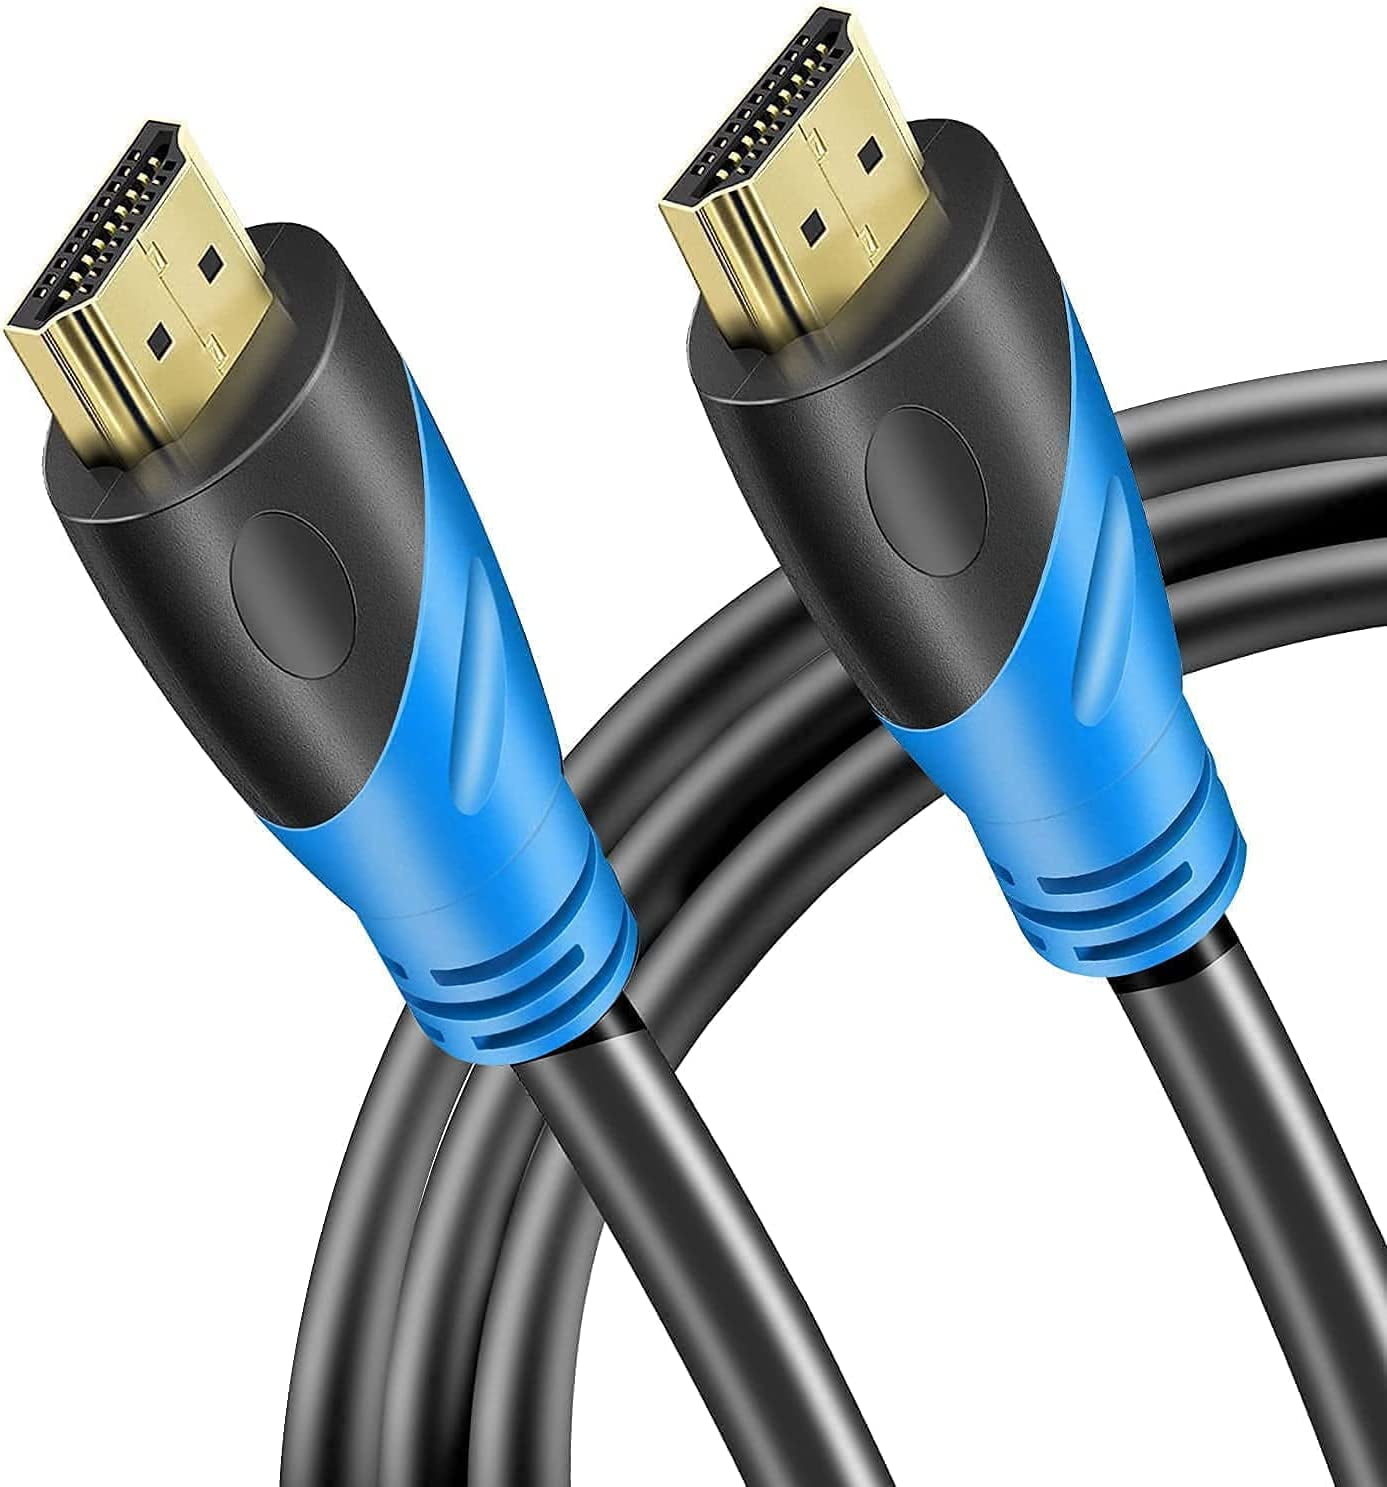 Câble HDMI 2.0 essentiel PcCom 30AWG 4K CCS 3m